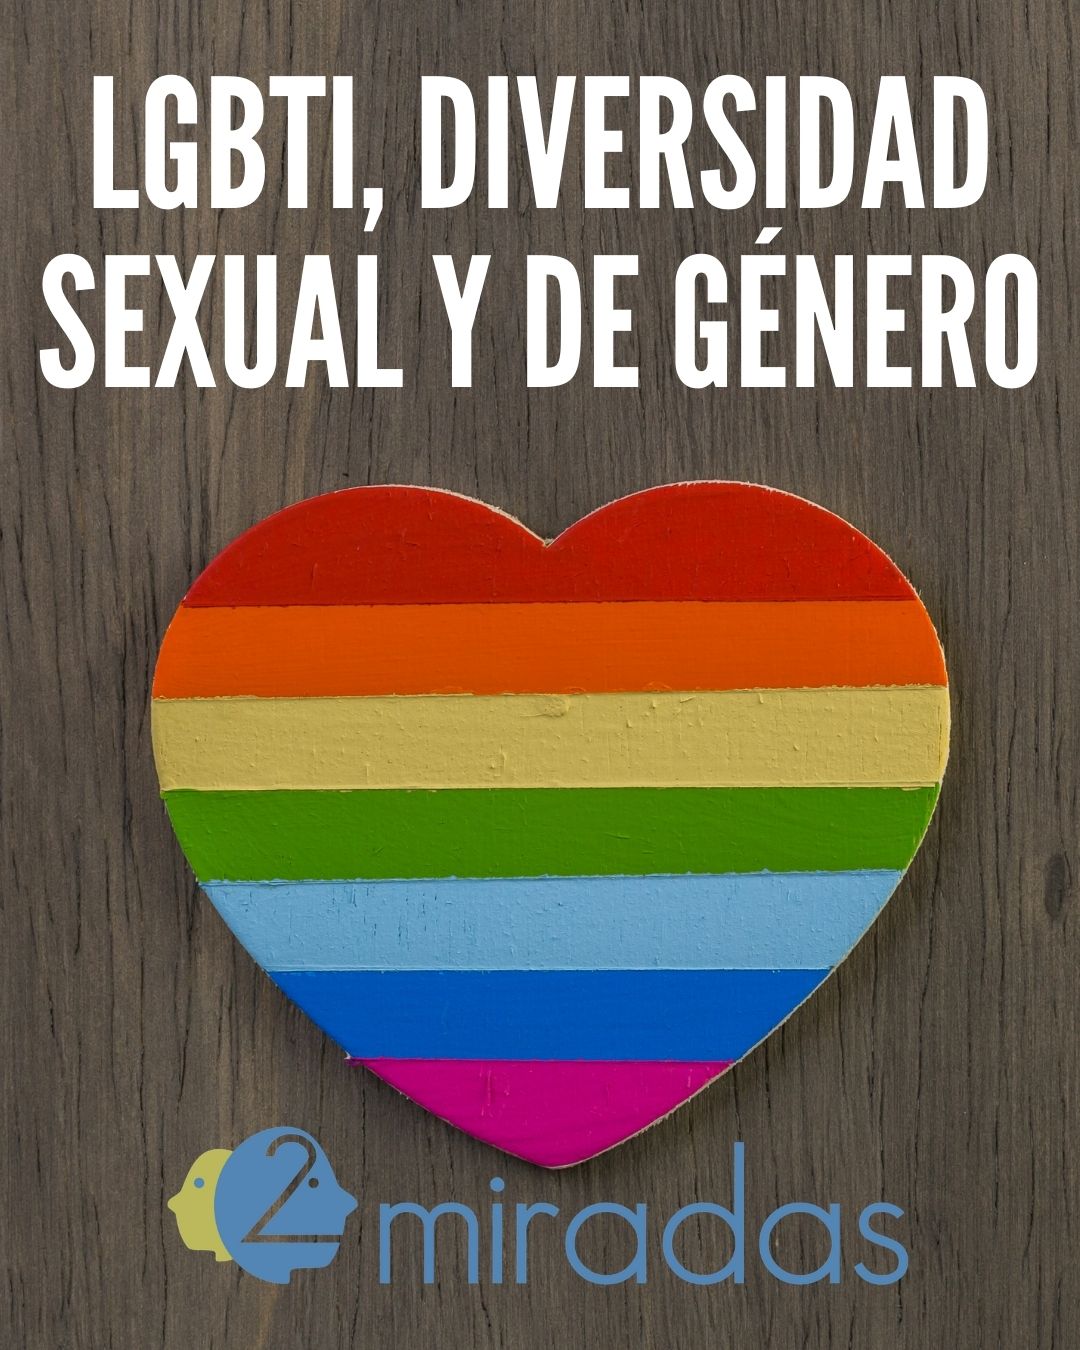 LGBTI Diversidad sexual y de género